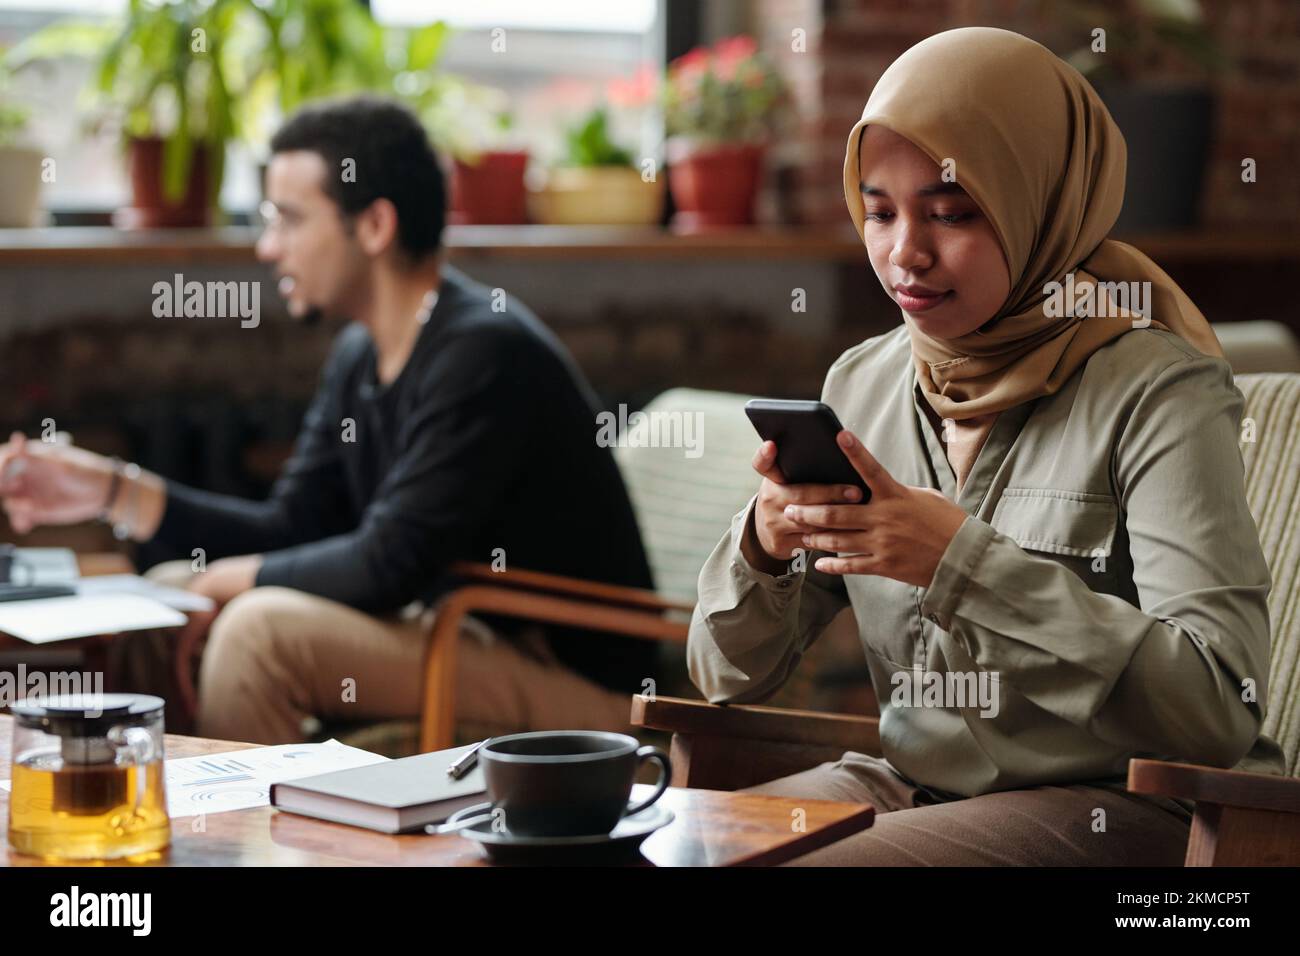 Junge muslimische Geschäftsfrau, die per Smartphone per Hidschab-Messaging kommuniziert oder ihre Arbeit organisiert, während sie mit Tee und Notizbuch im Café am Tisch sitzt Stockfoto